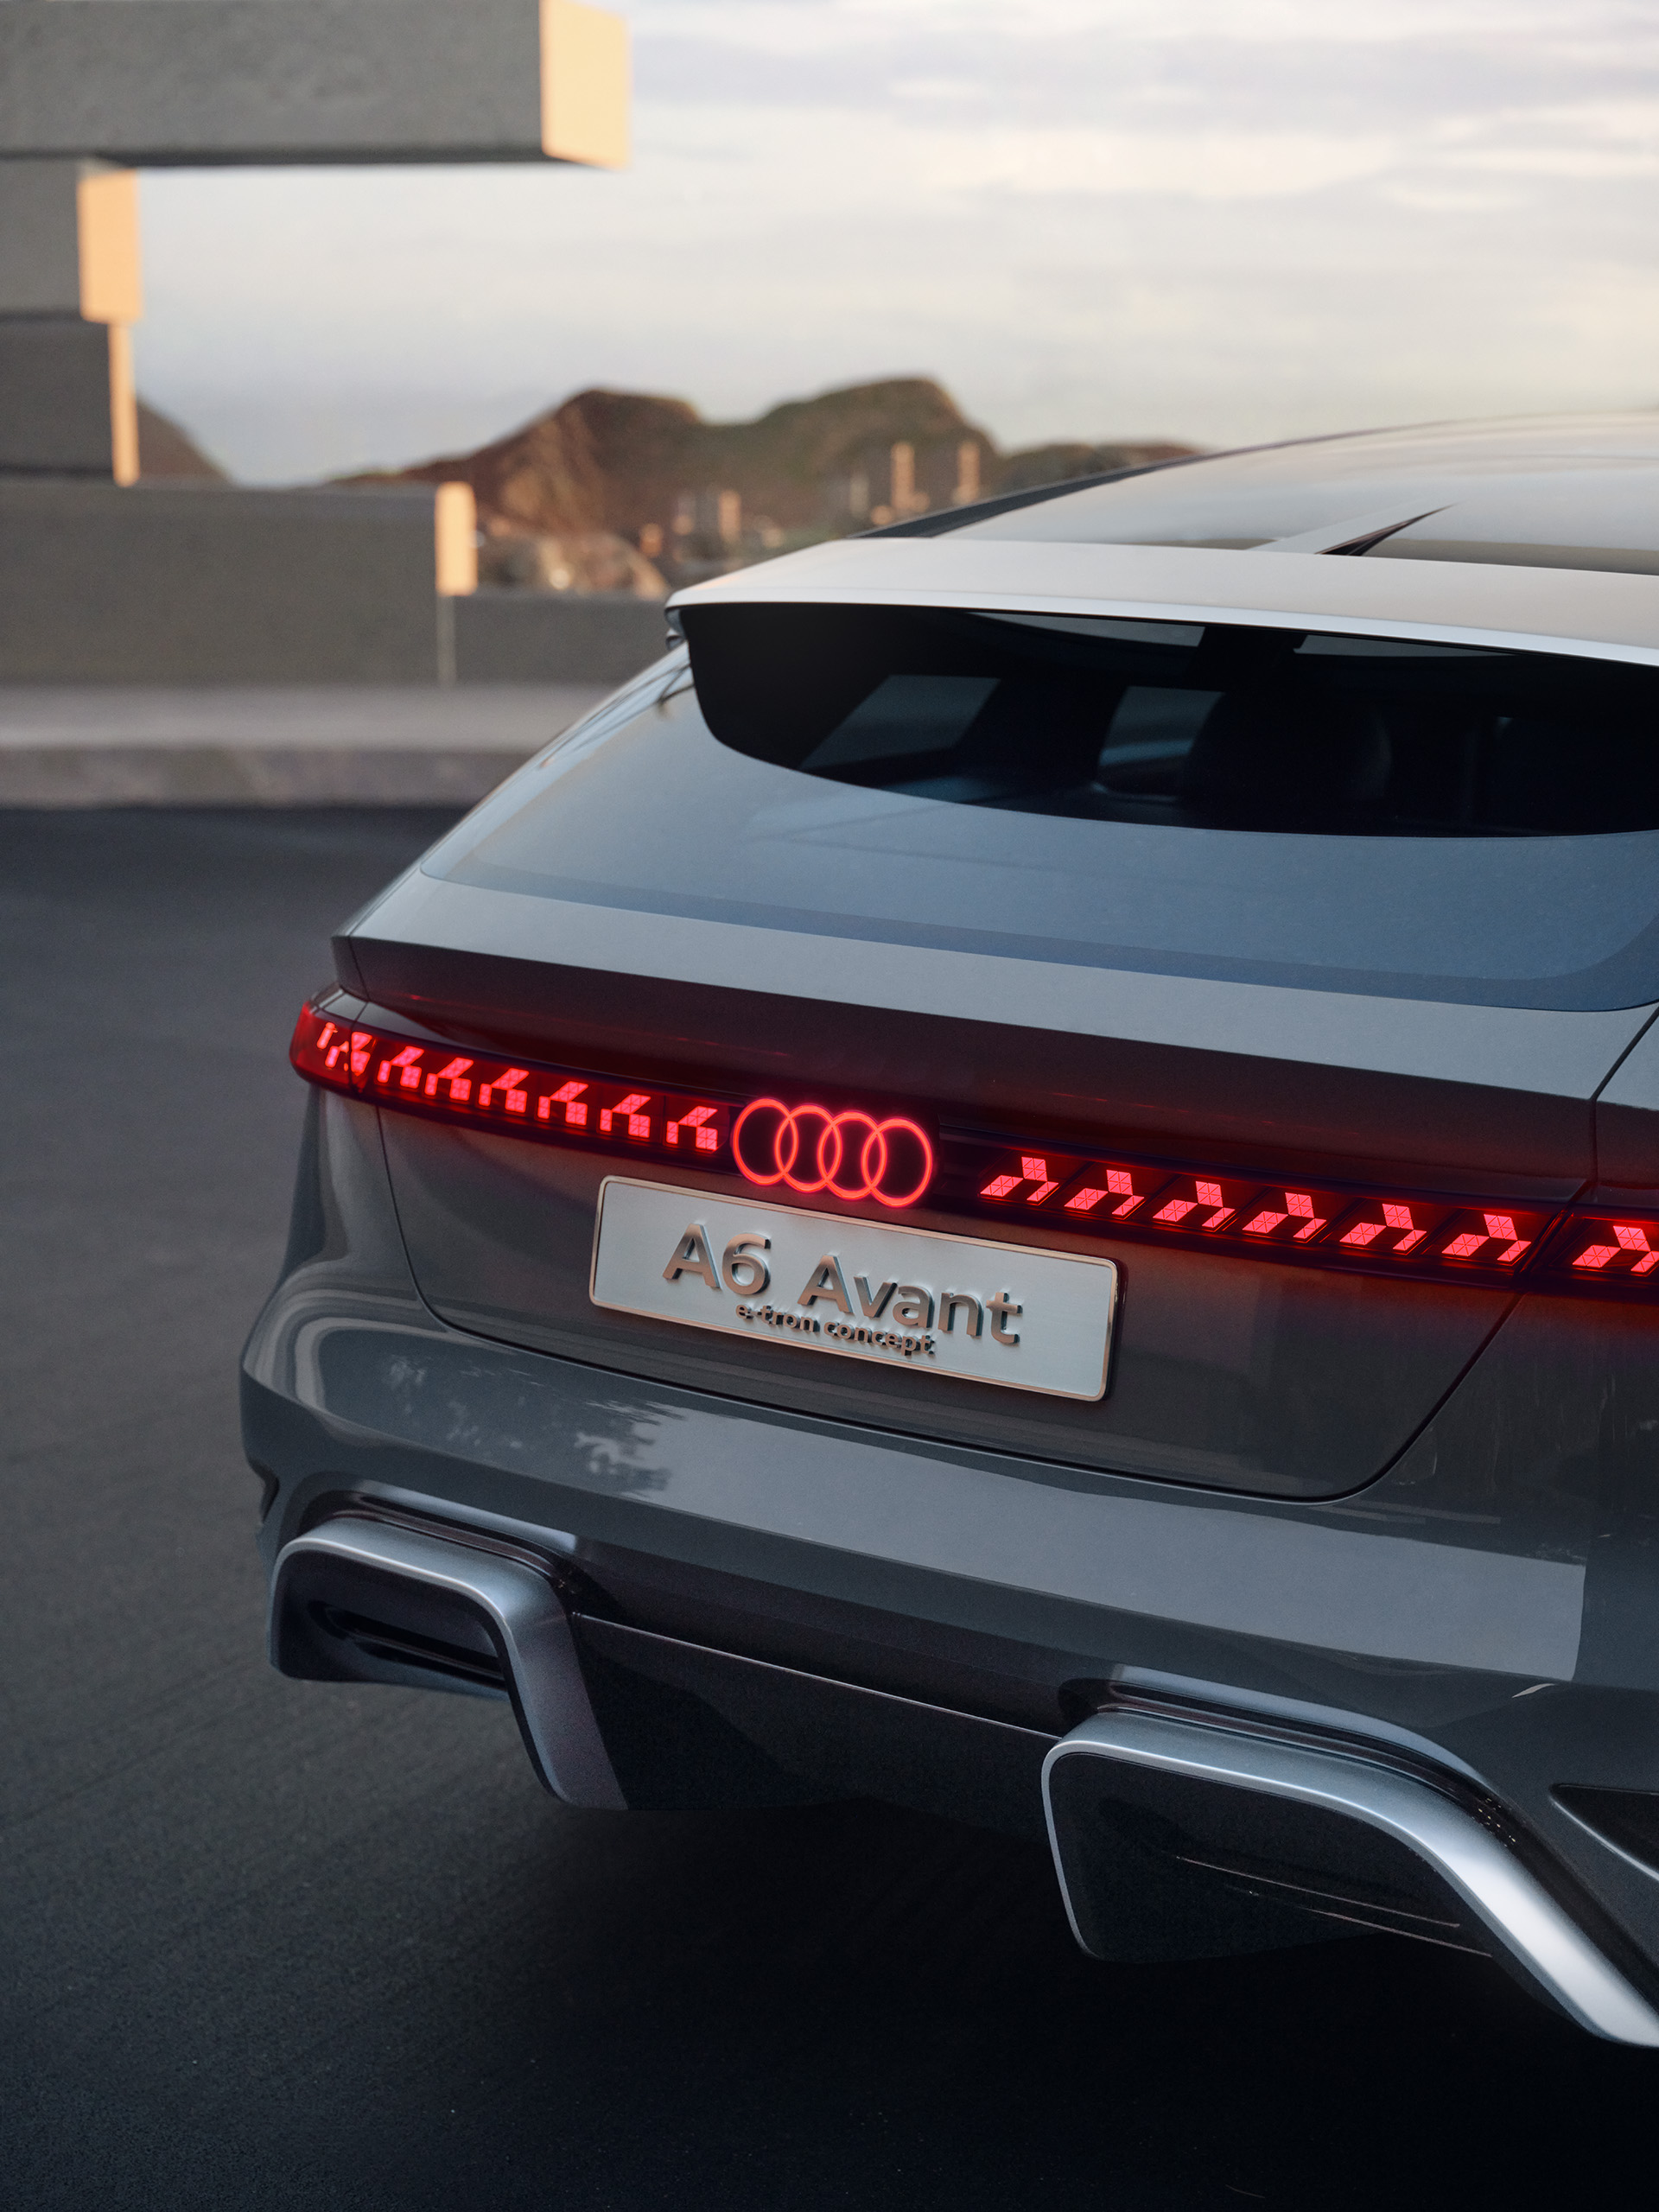 Vue arrière de l'Audi A6 Avant e-tron concept avec bandeau lumineux continu.